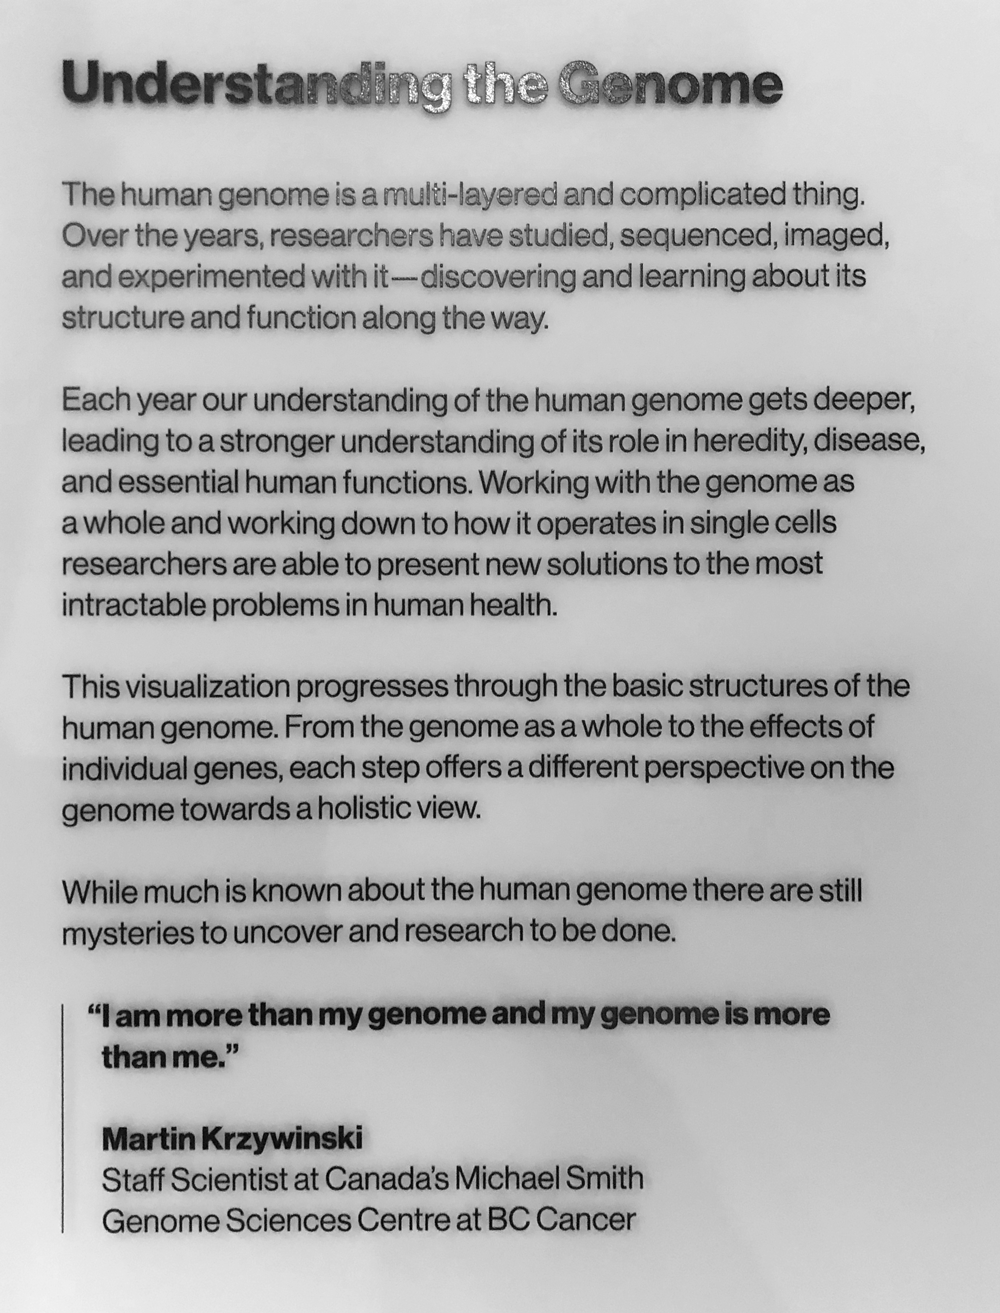 Gene Cultures exhibit at the MIT Museum - Martin Krzywinski / Martin Krzywinski @MKrzywinski mkweb.bcgsc.ca